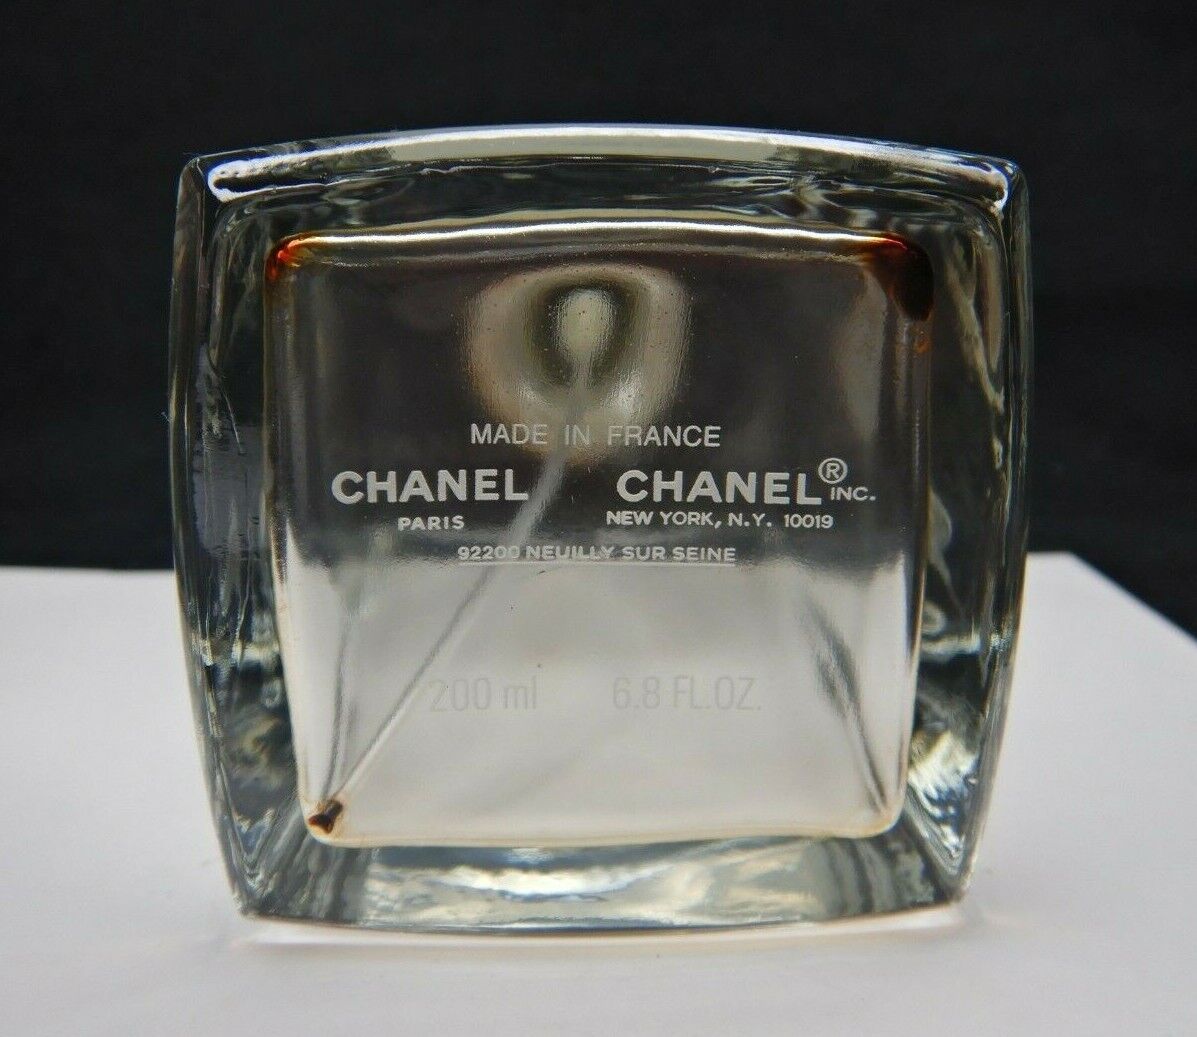 EMPTY PERFUME BOTTLE Les Exclusifs de Chanel Coromandel EDT 6.8oz 200ml  VINTAGE